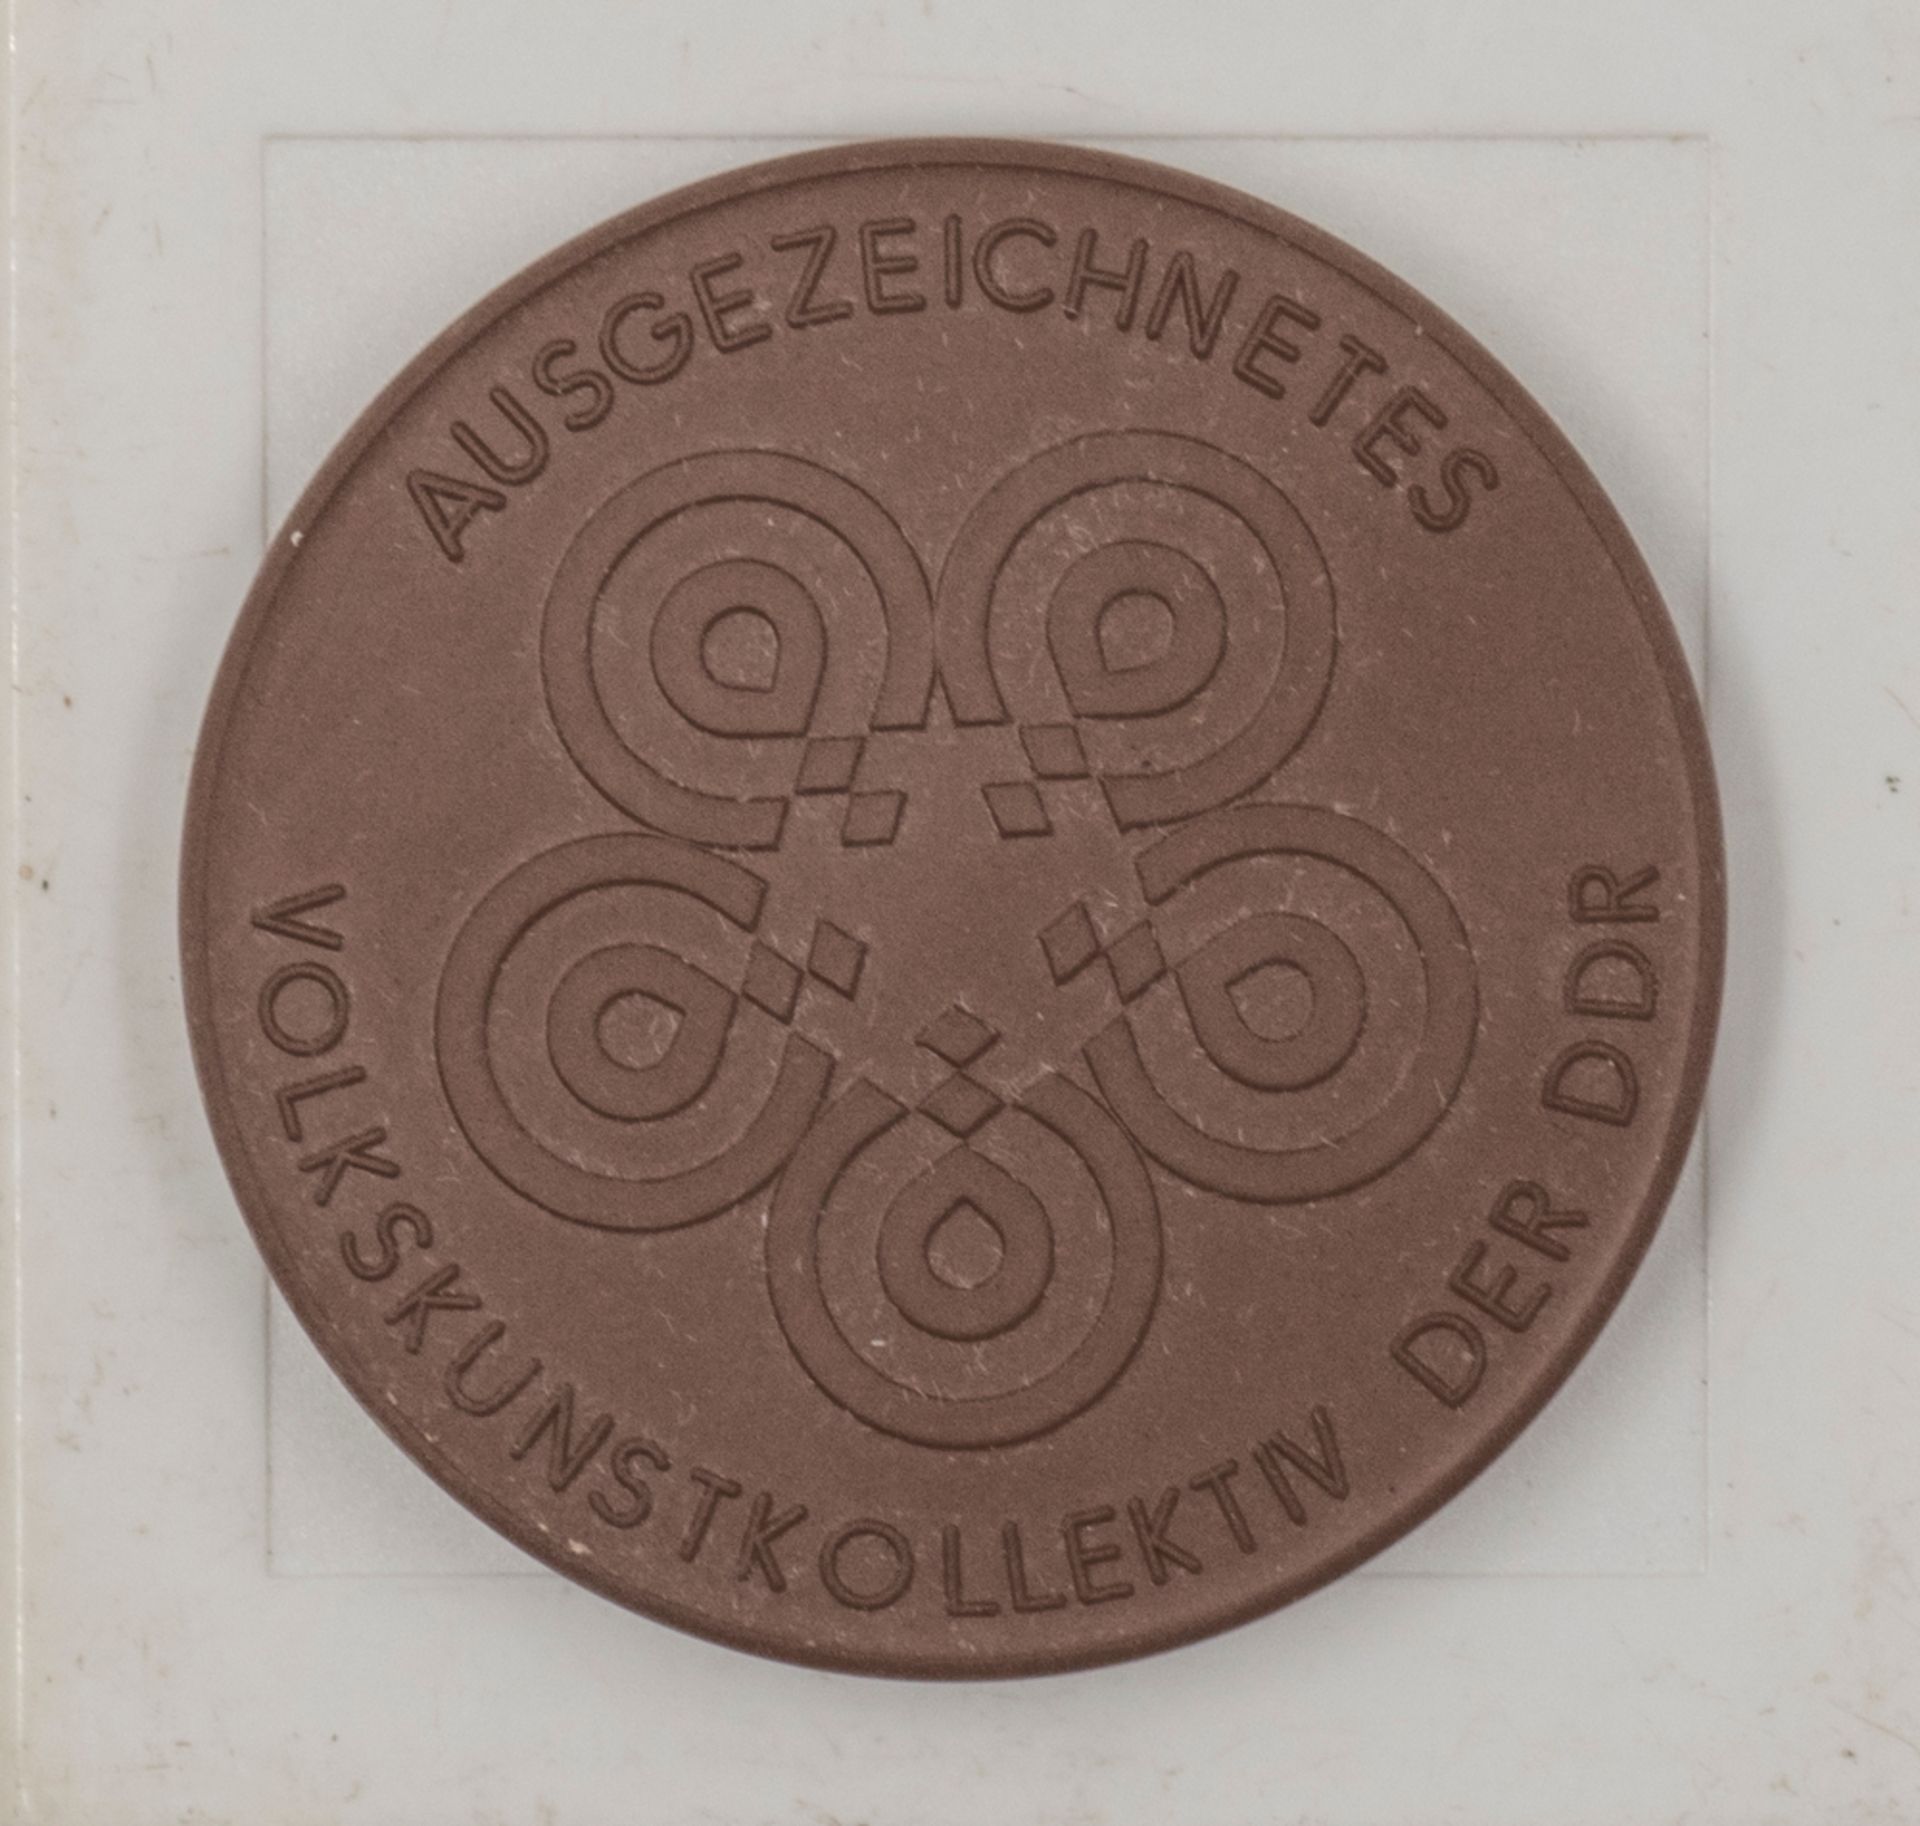 DDR Porzellan - Medaille "Volkskunstkollektiv der DDR". Durchmesser: ca. 63 mm. Im Etui.